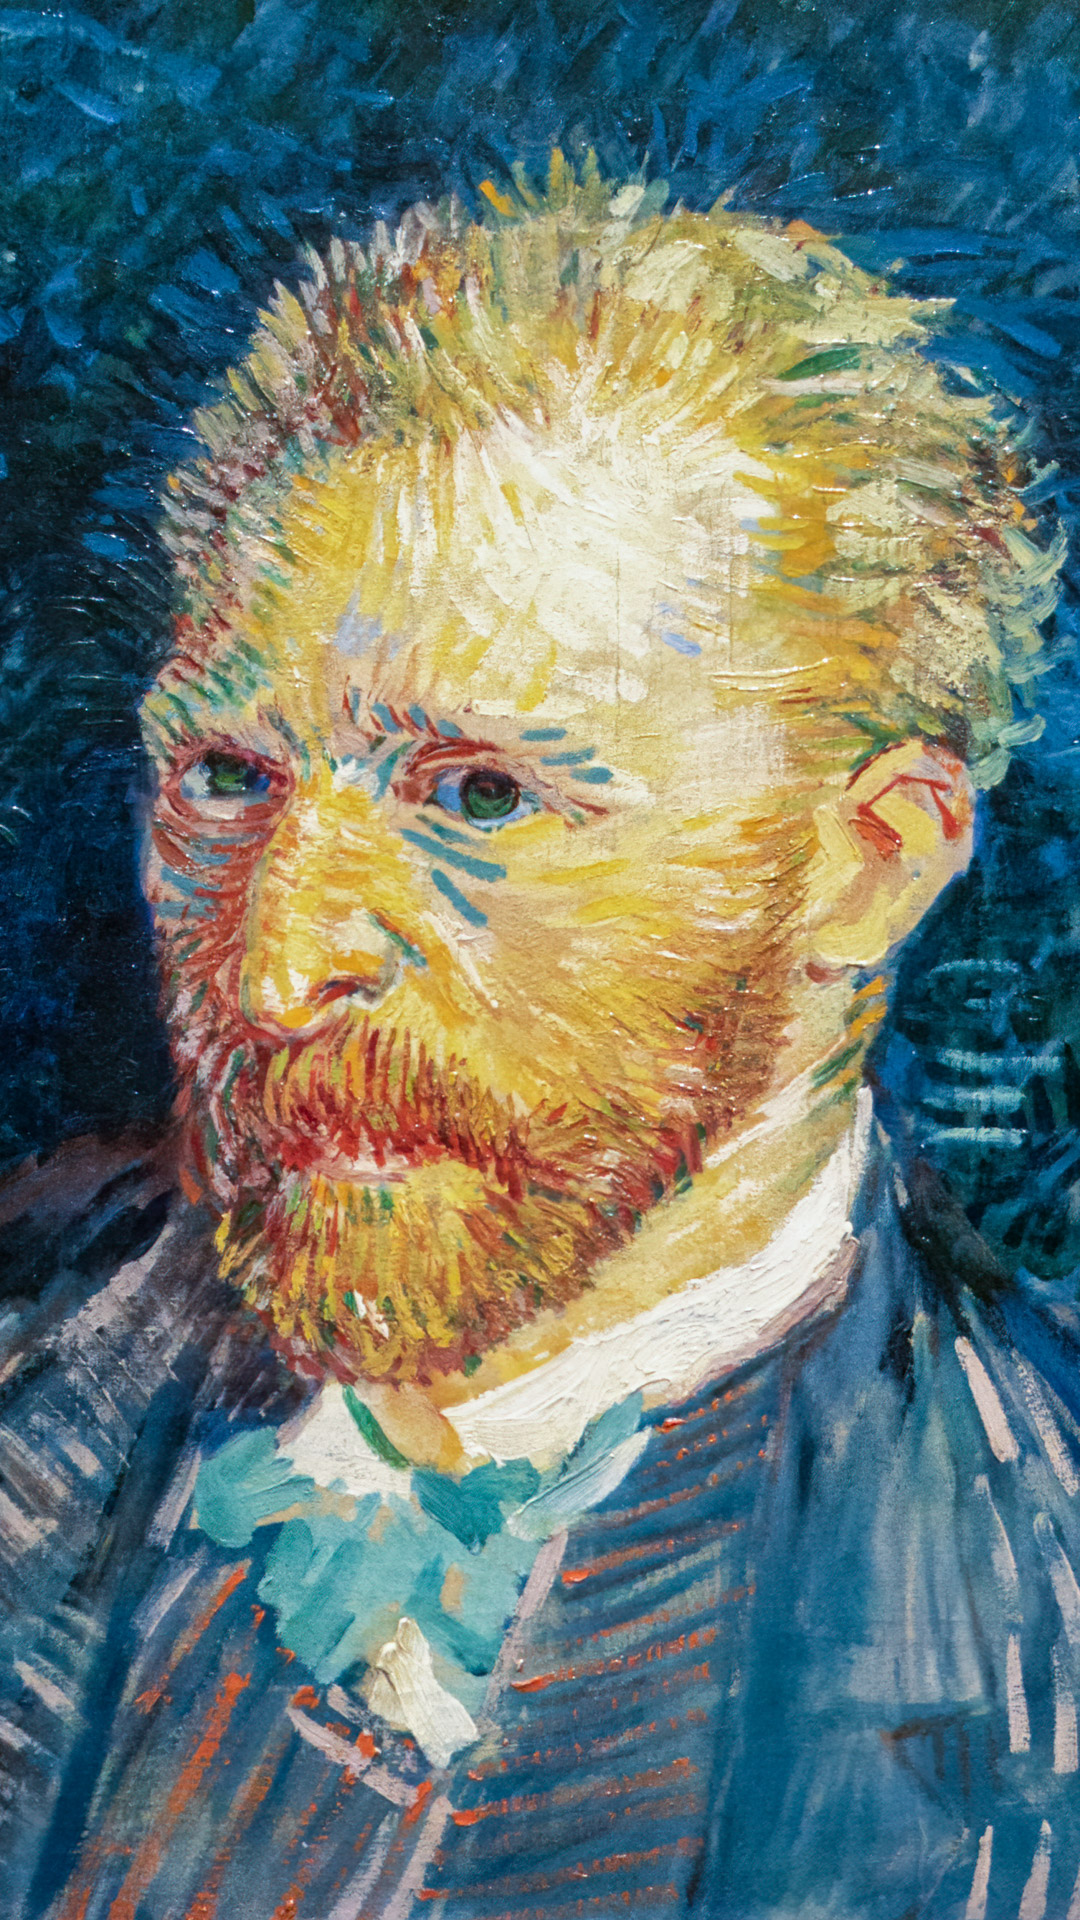 Infusez votre écran d'iPhone avec le regard intense de l'autoportrait de Van Gogh, un chef-d'œuvre artistique sous forme de fond d'écran.